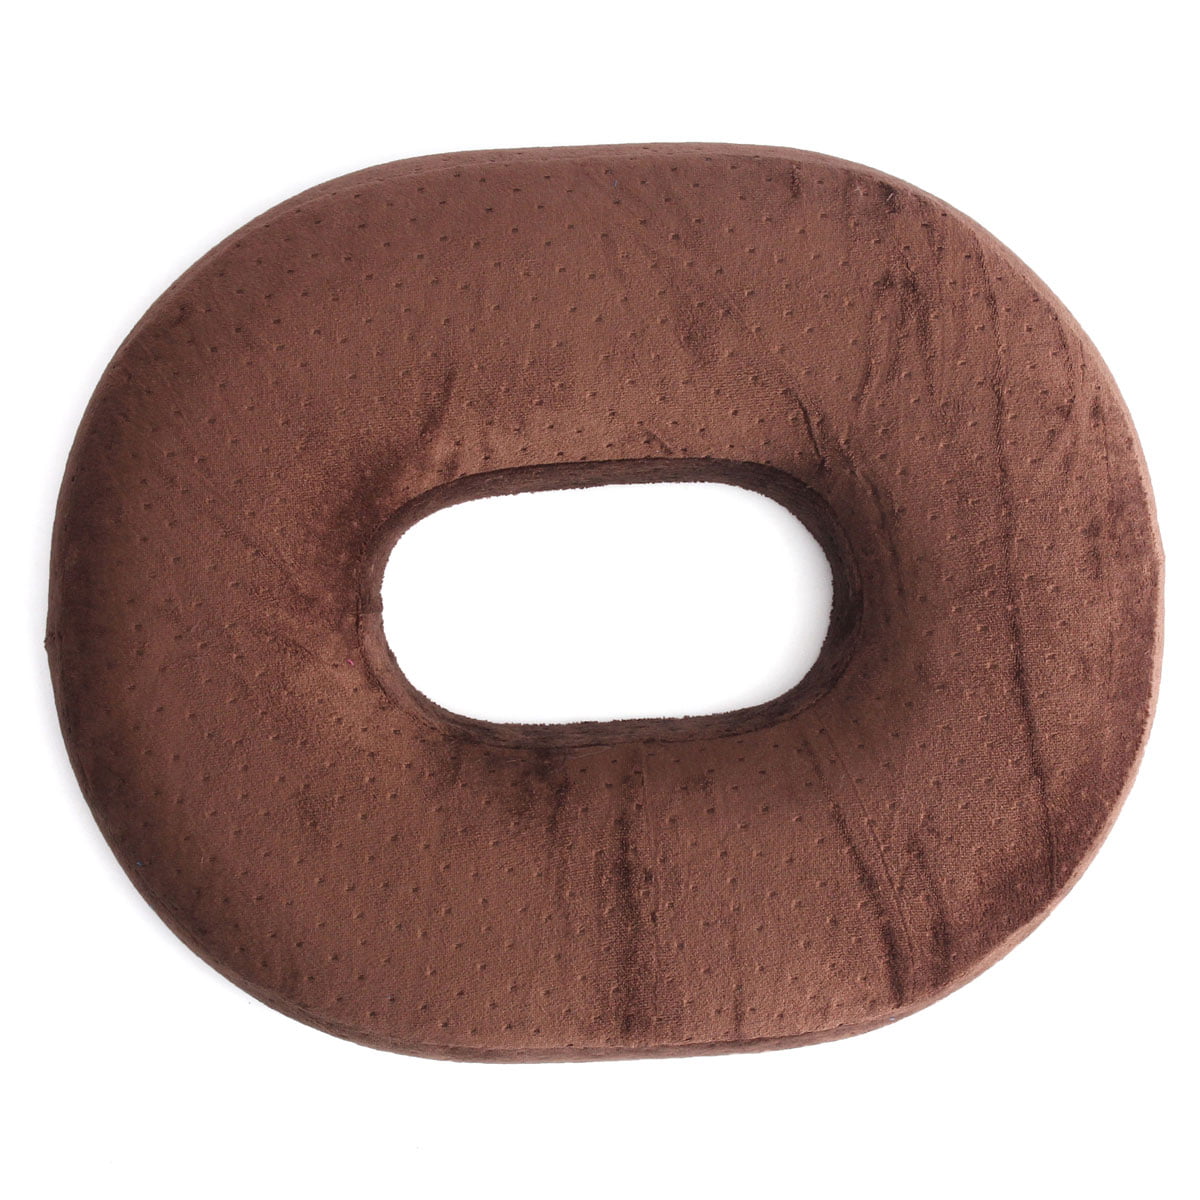 doughnut cushion